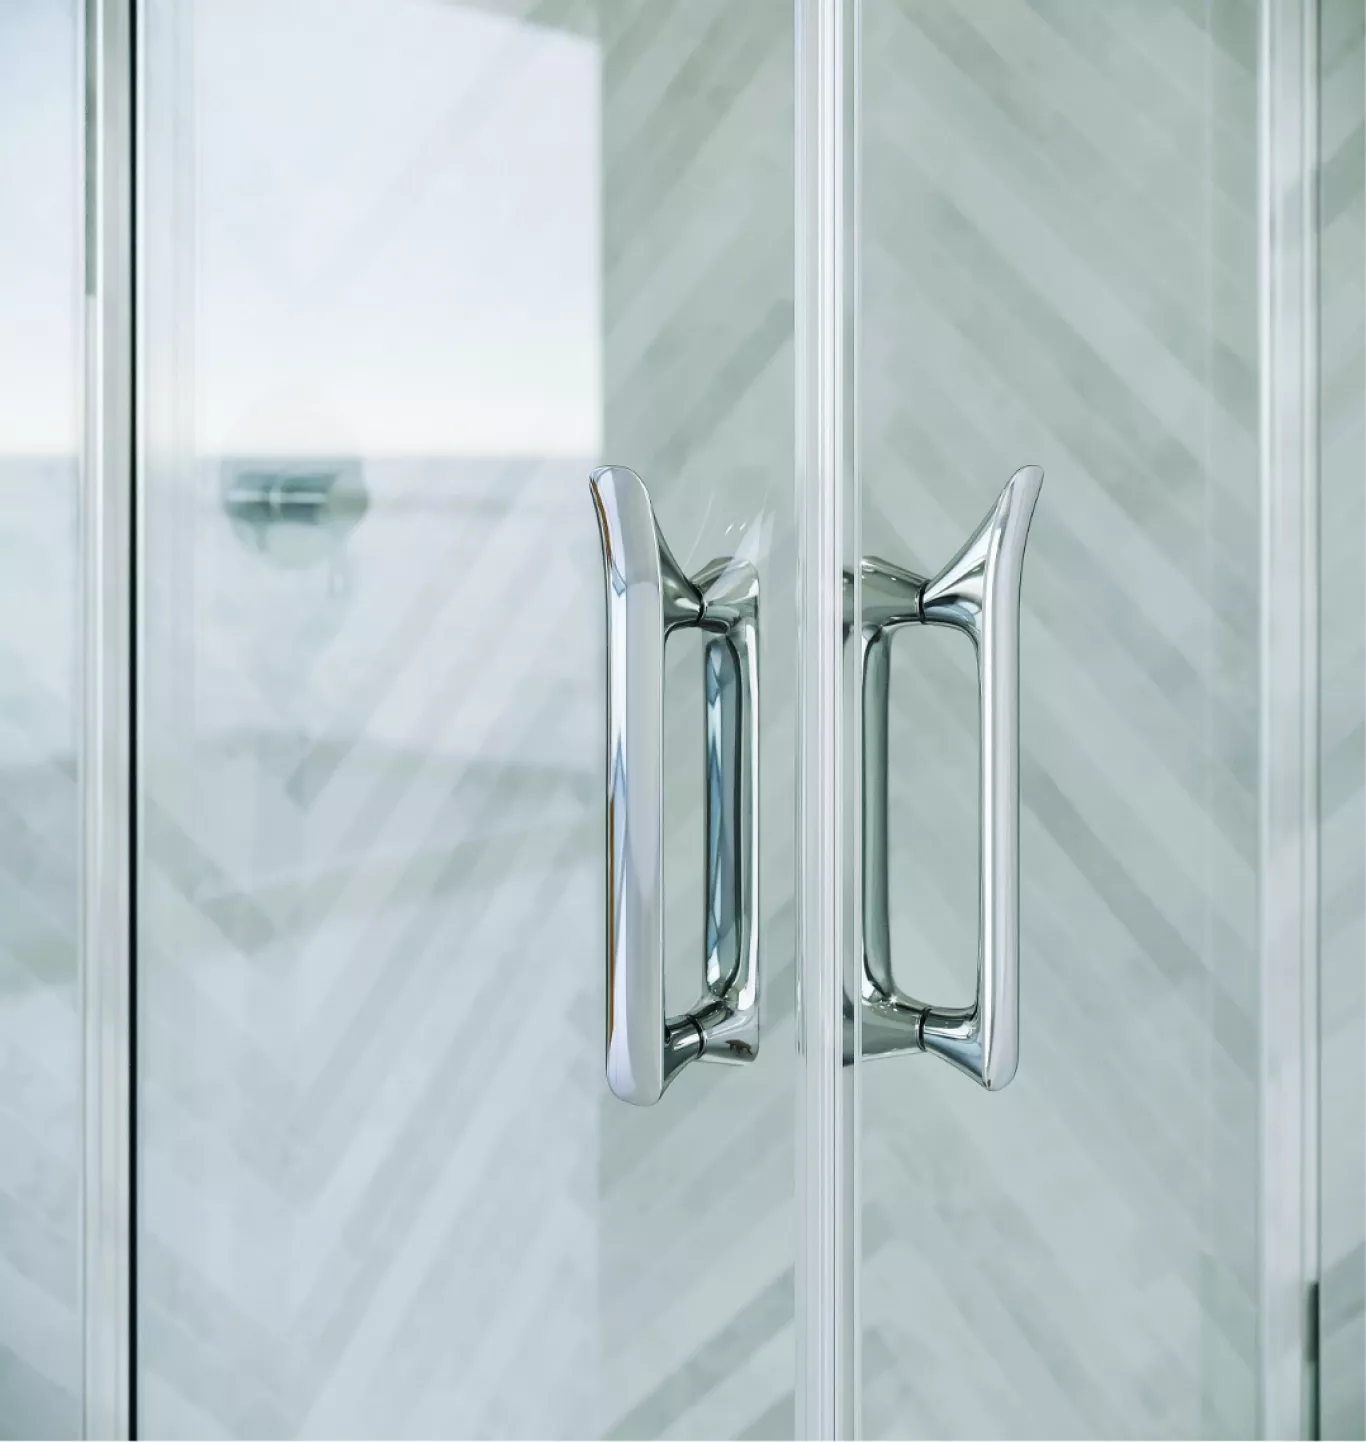 The ETO Shower Door handles